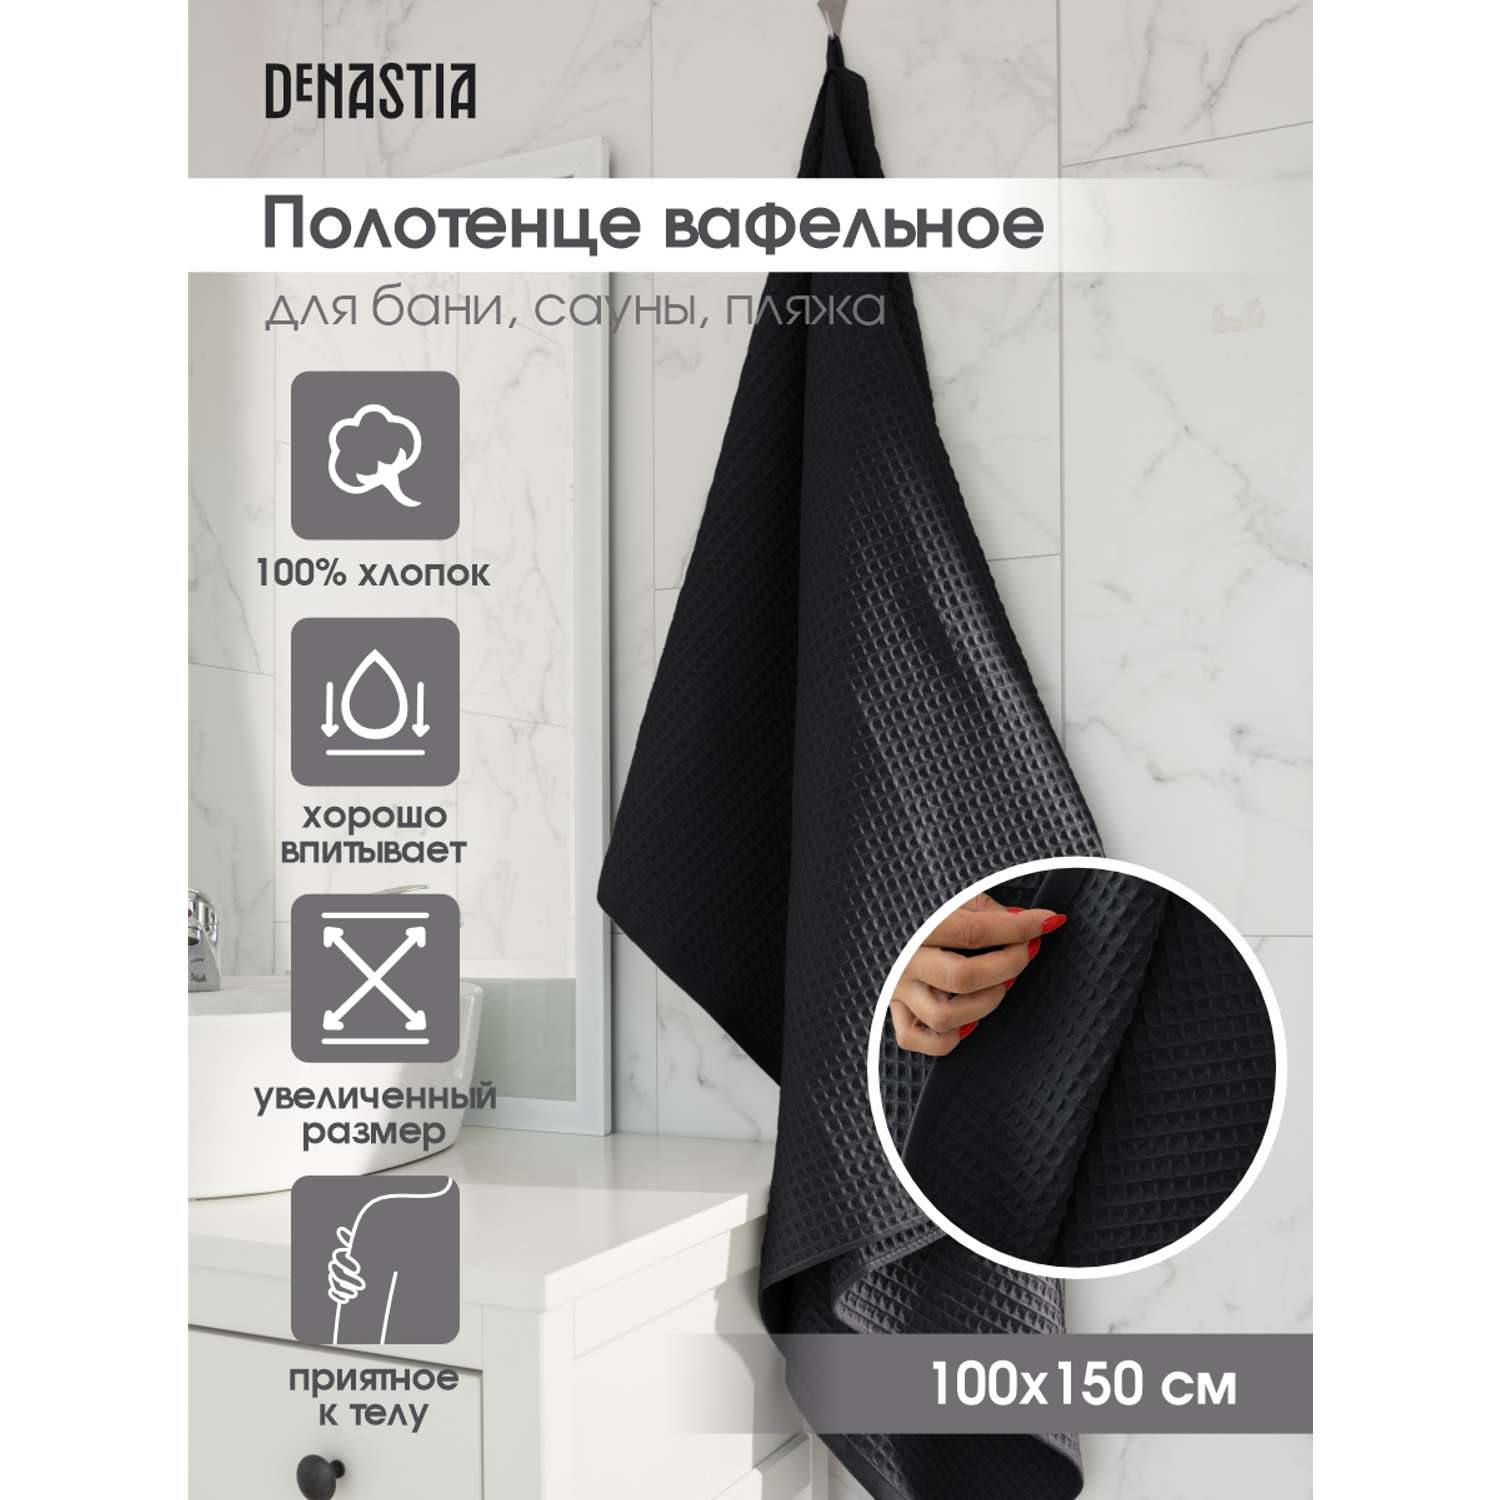 Полотенце DeNASTIA вафельное 90x150 см 100% хлопок серый - фото 2